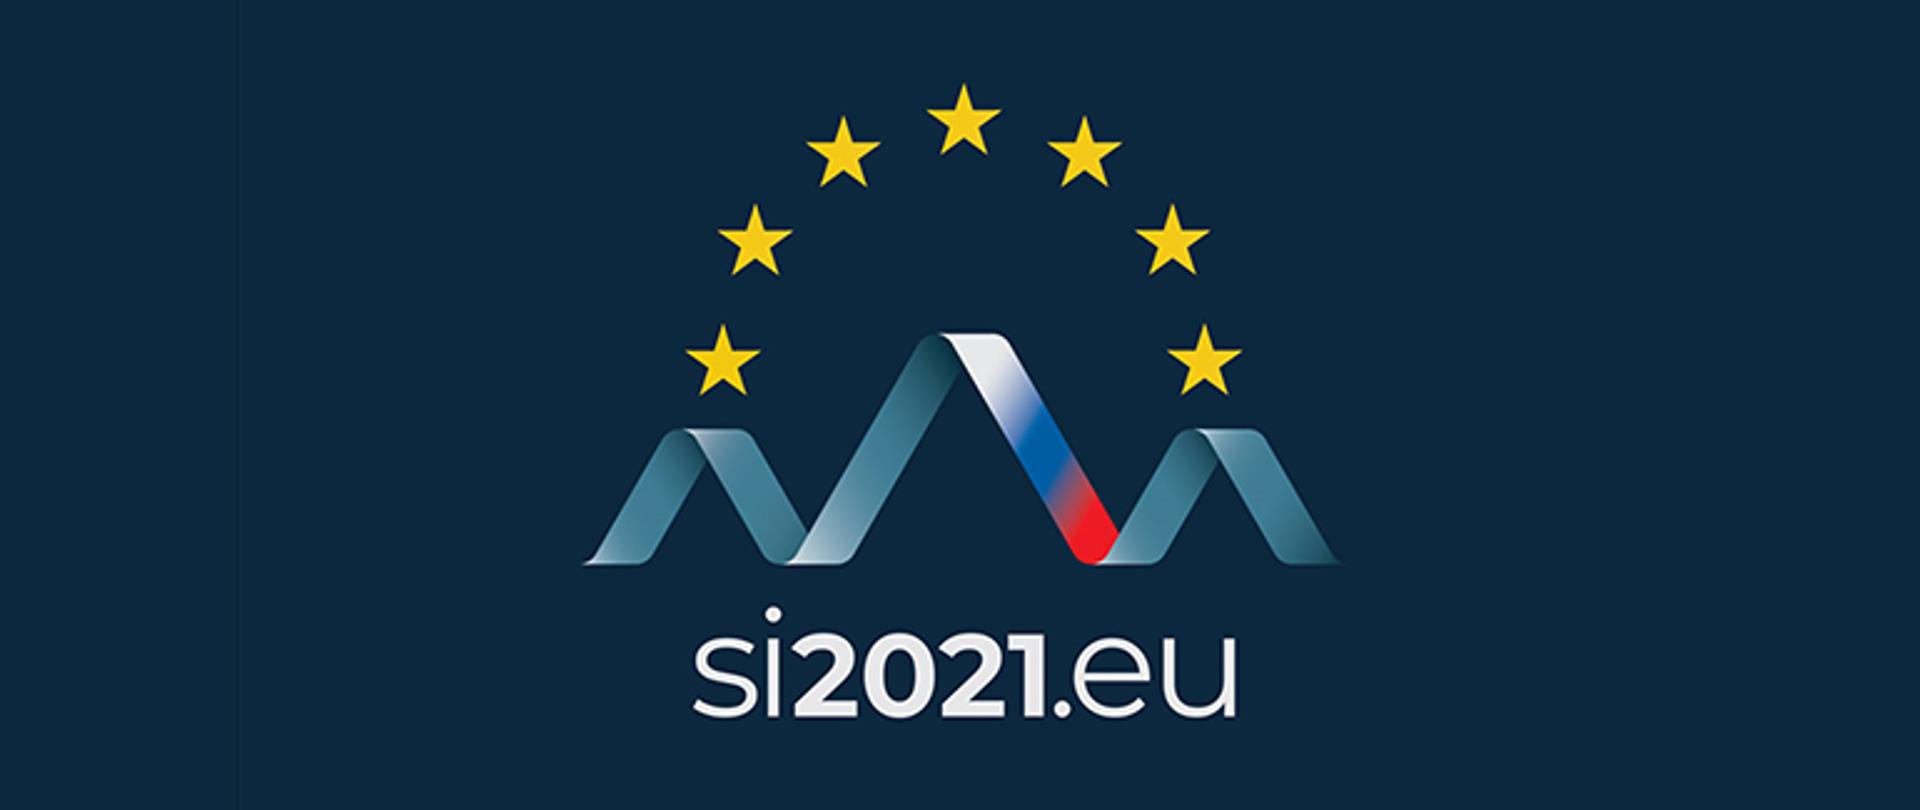 Logo prezydencji Słoweńskiej